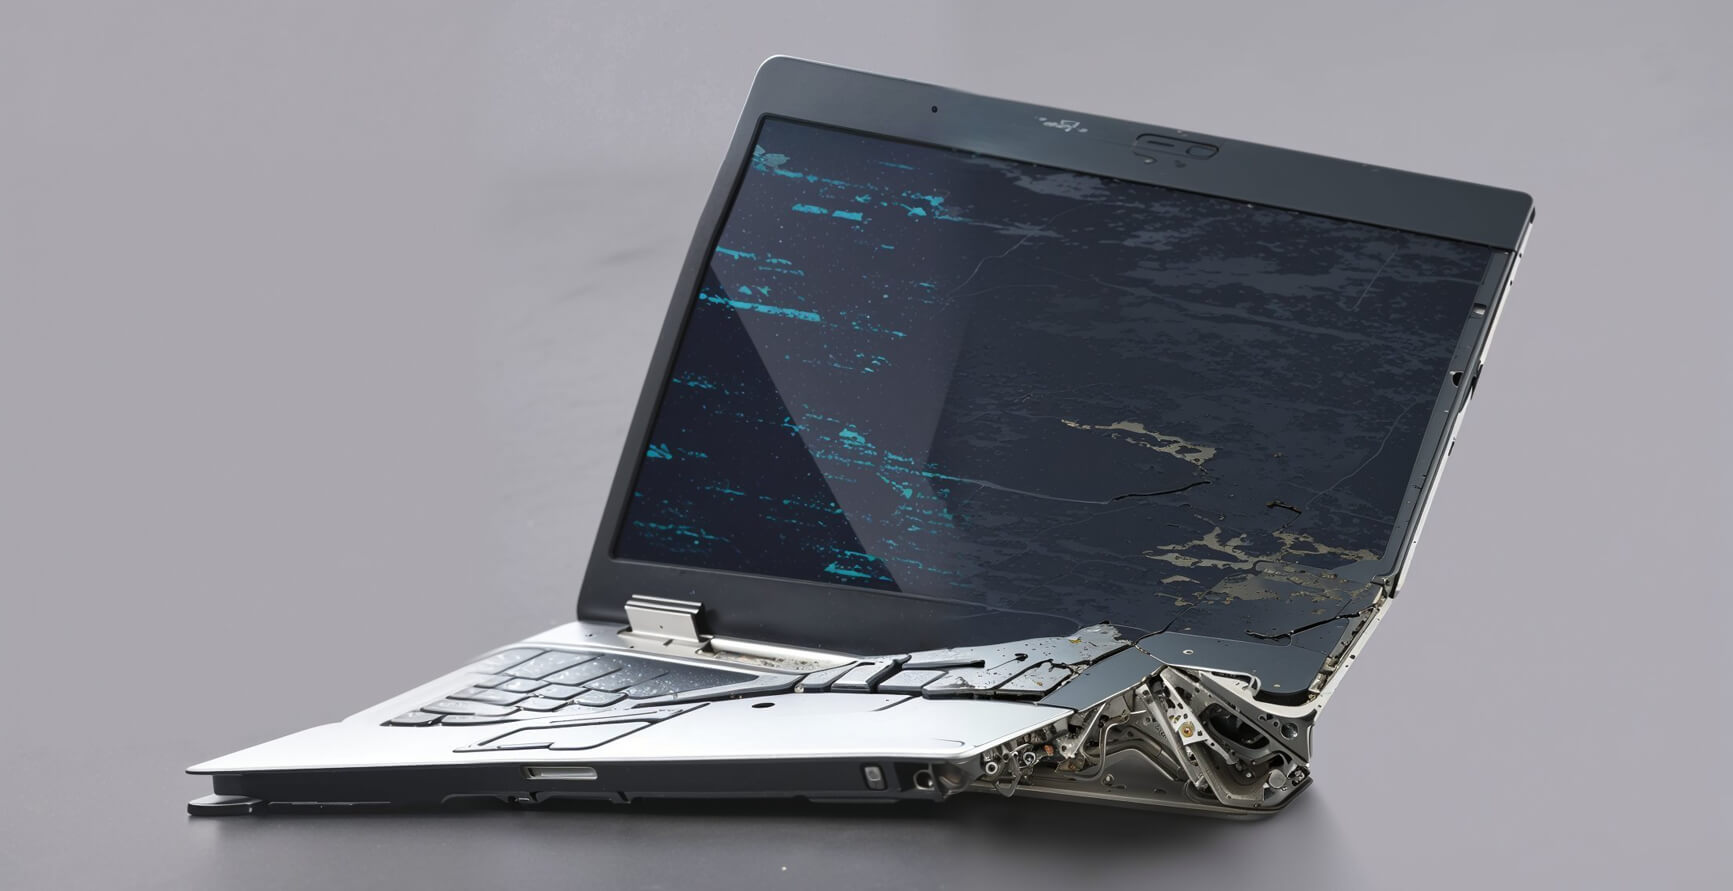 Ein zerstörter grauer Laptop, dessen Tastatur sich wellt bis er seitlich aufbricht. Der Screen zeigt Bildschirmfehler und Risse im Glas.